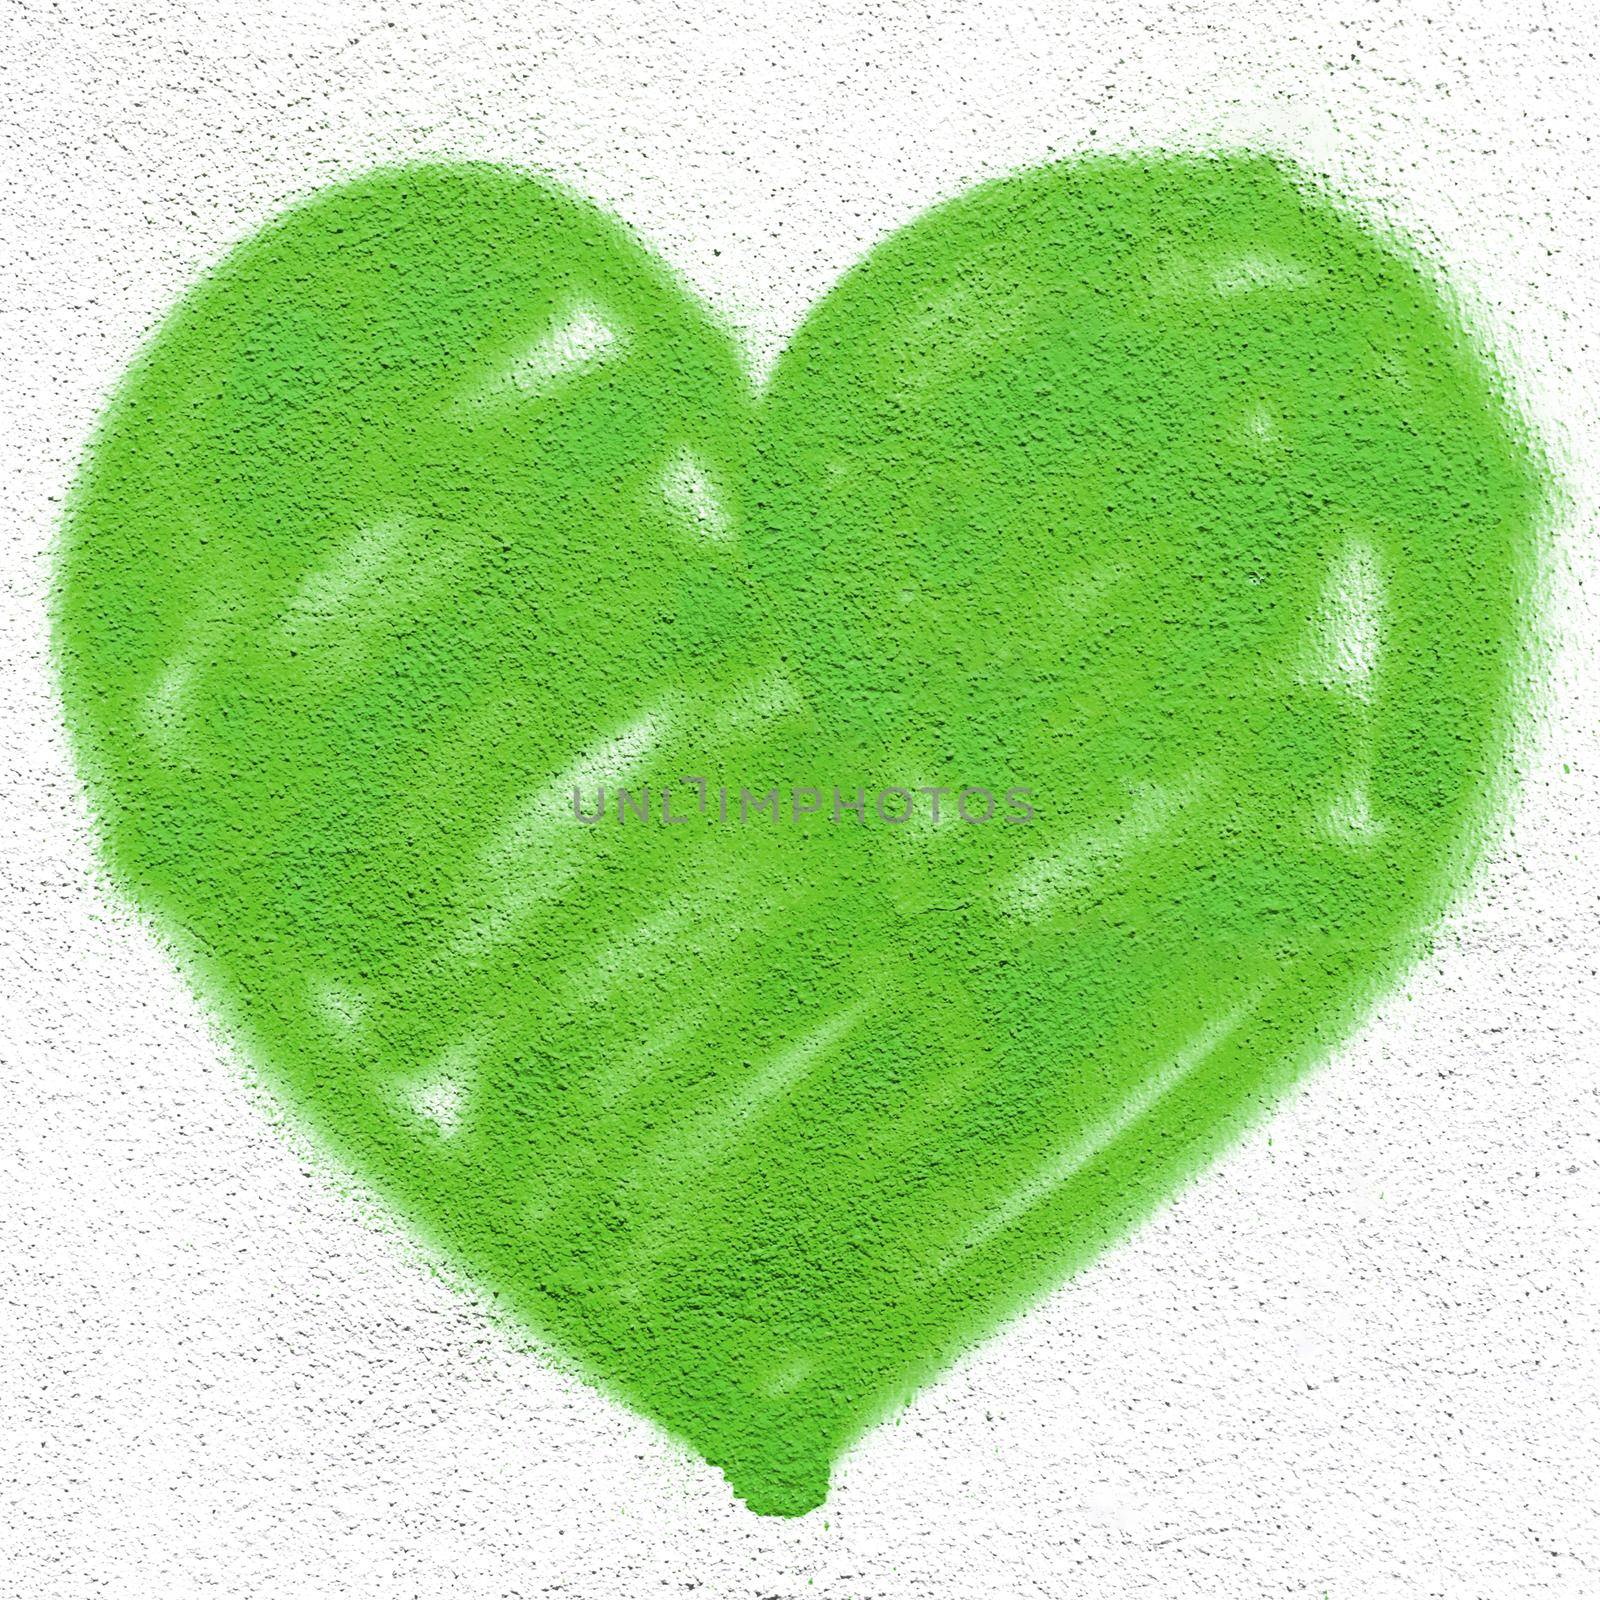 Green heart on wall by germanopoli